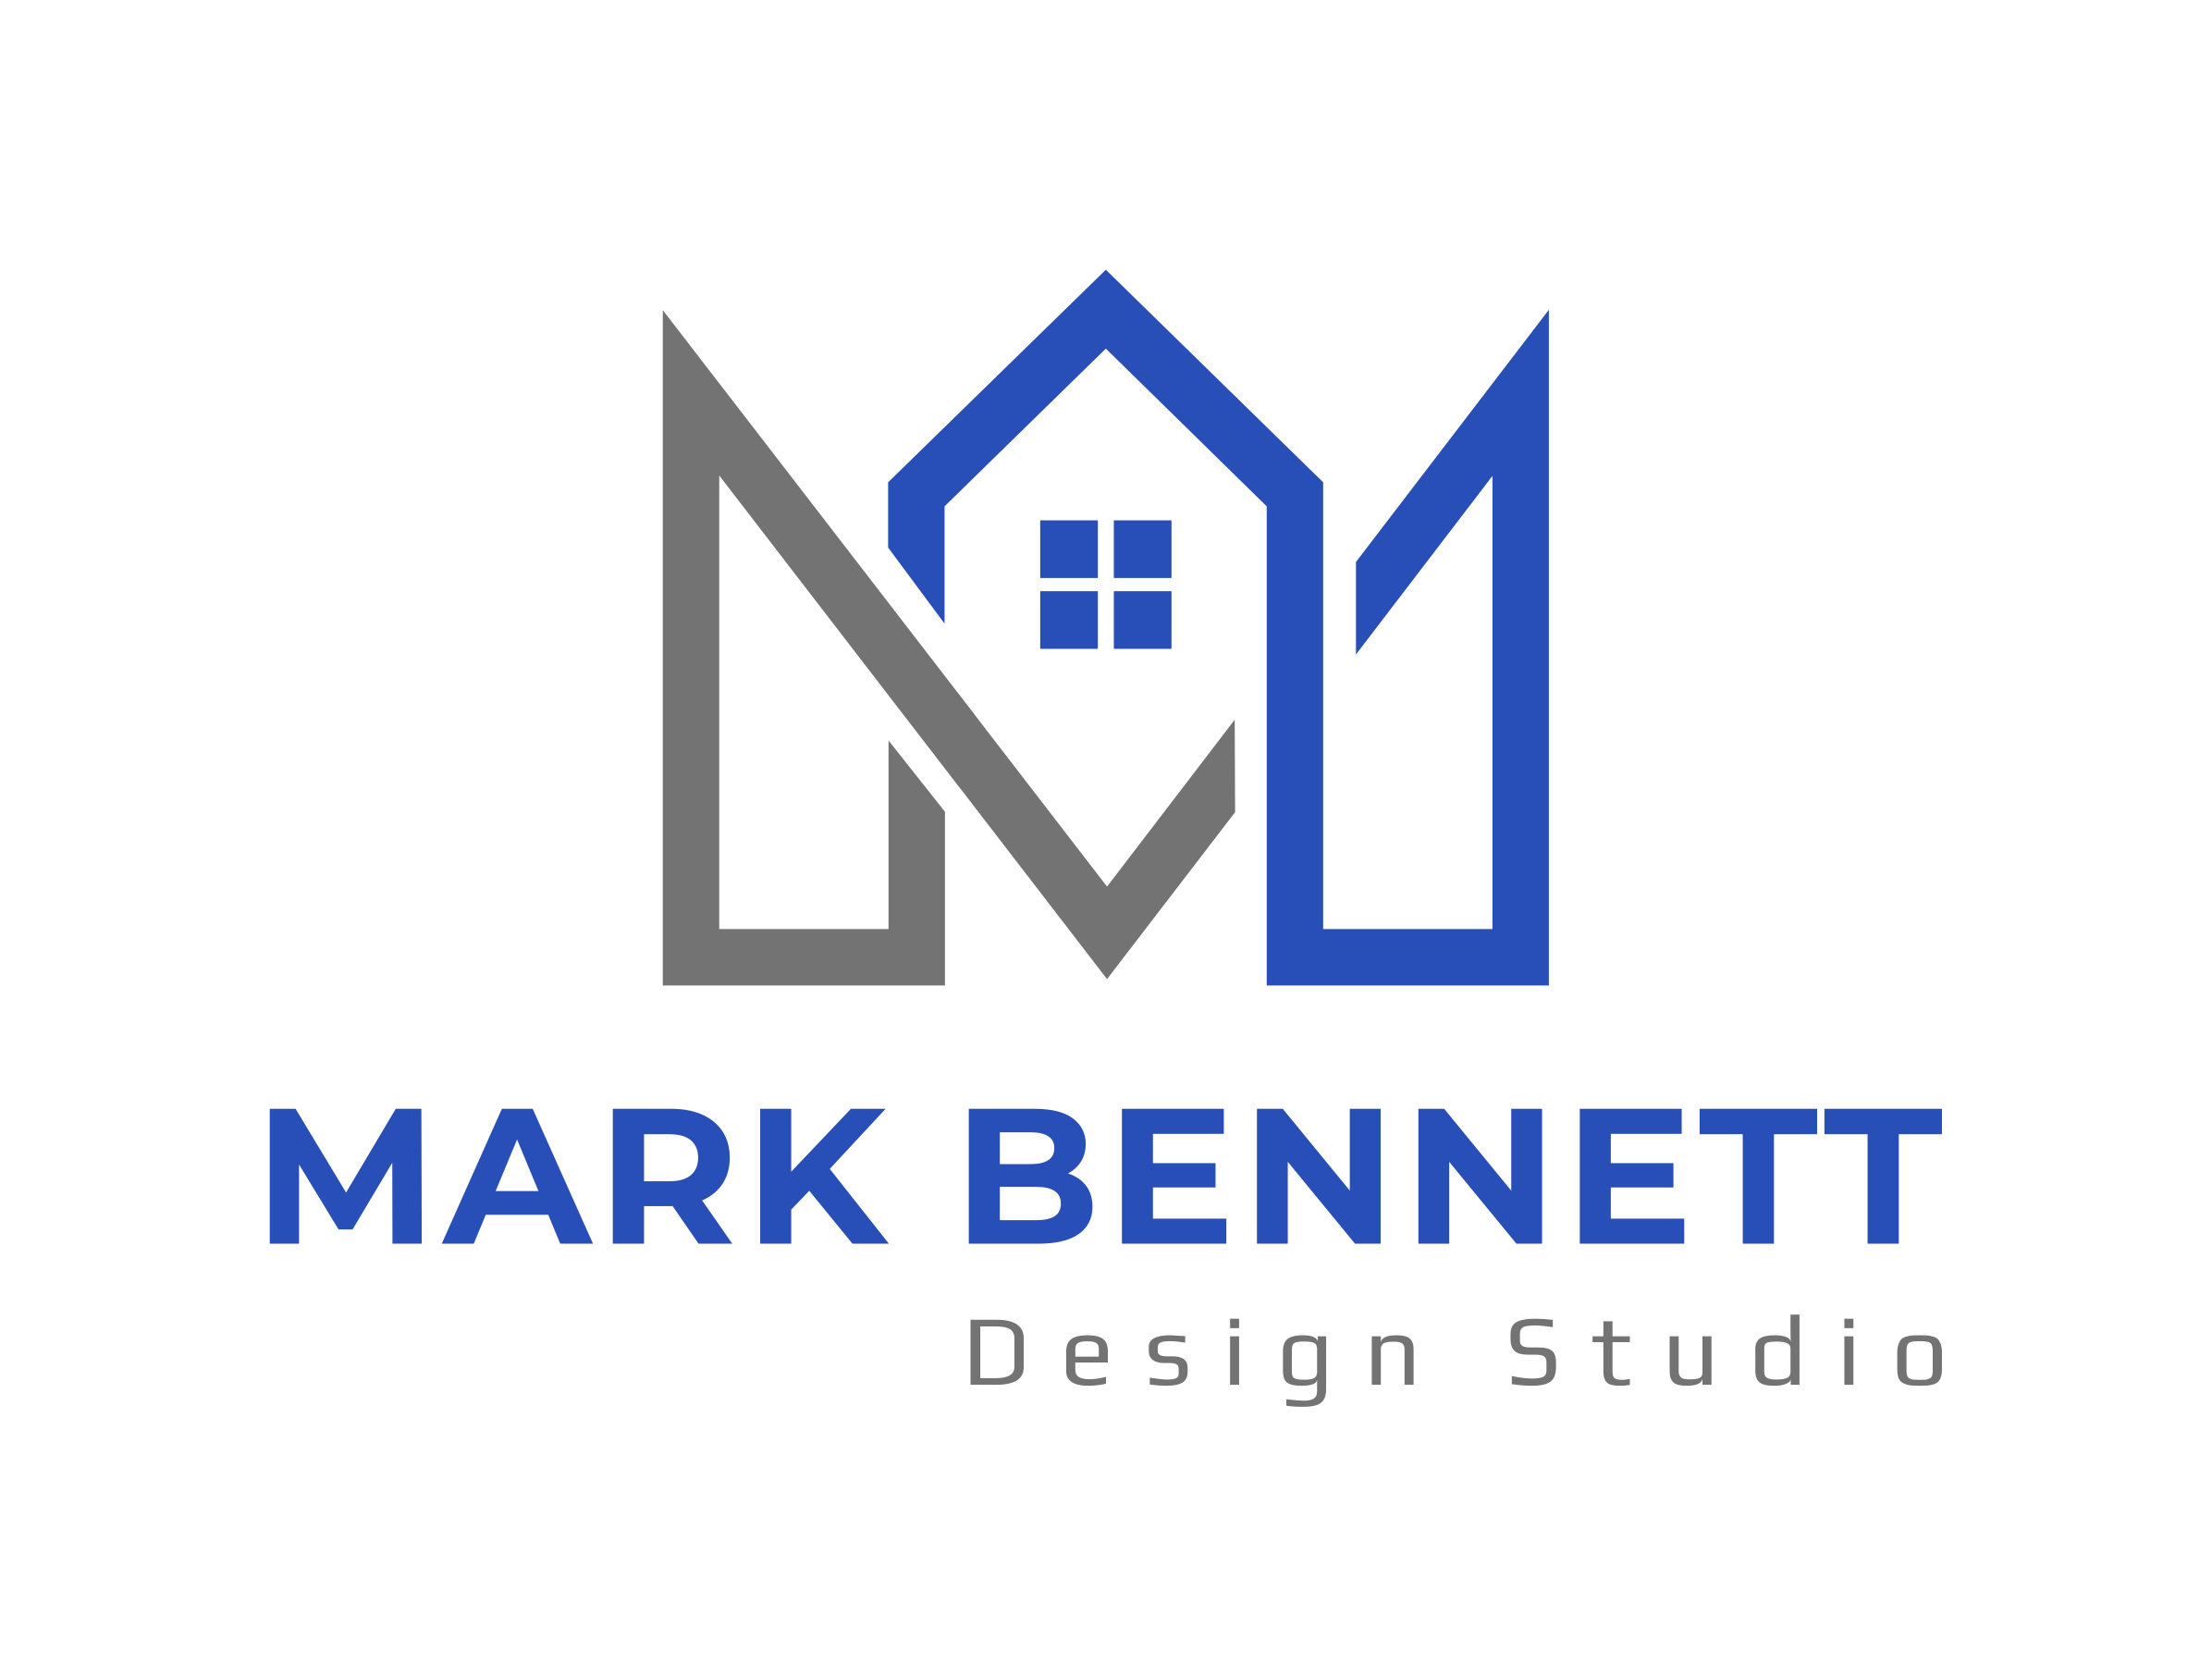 Mark Bennett Design Studio